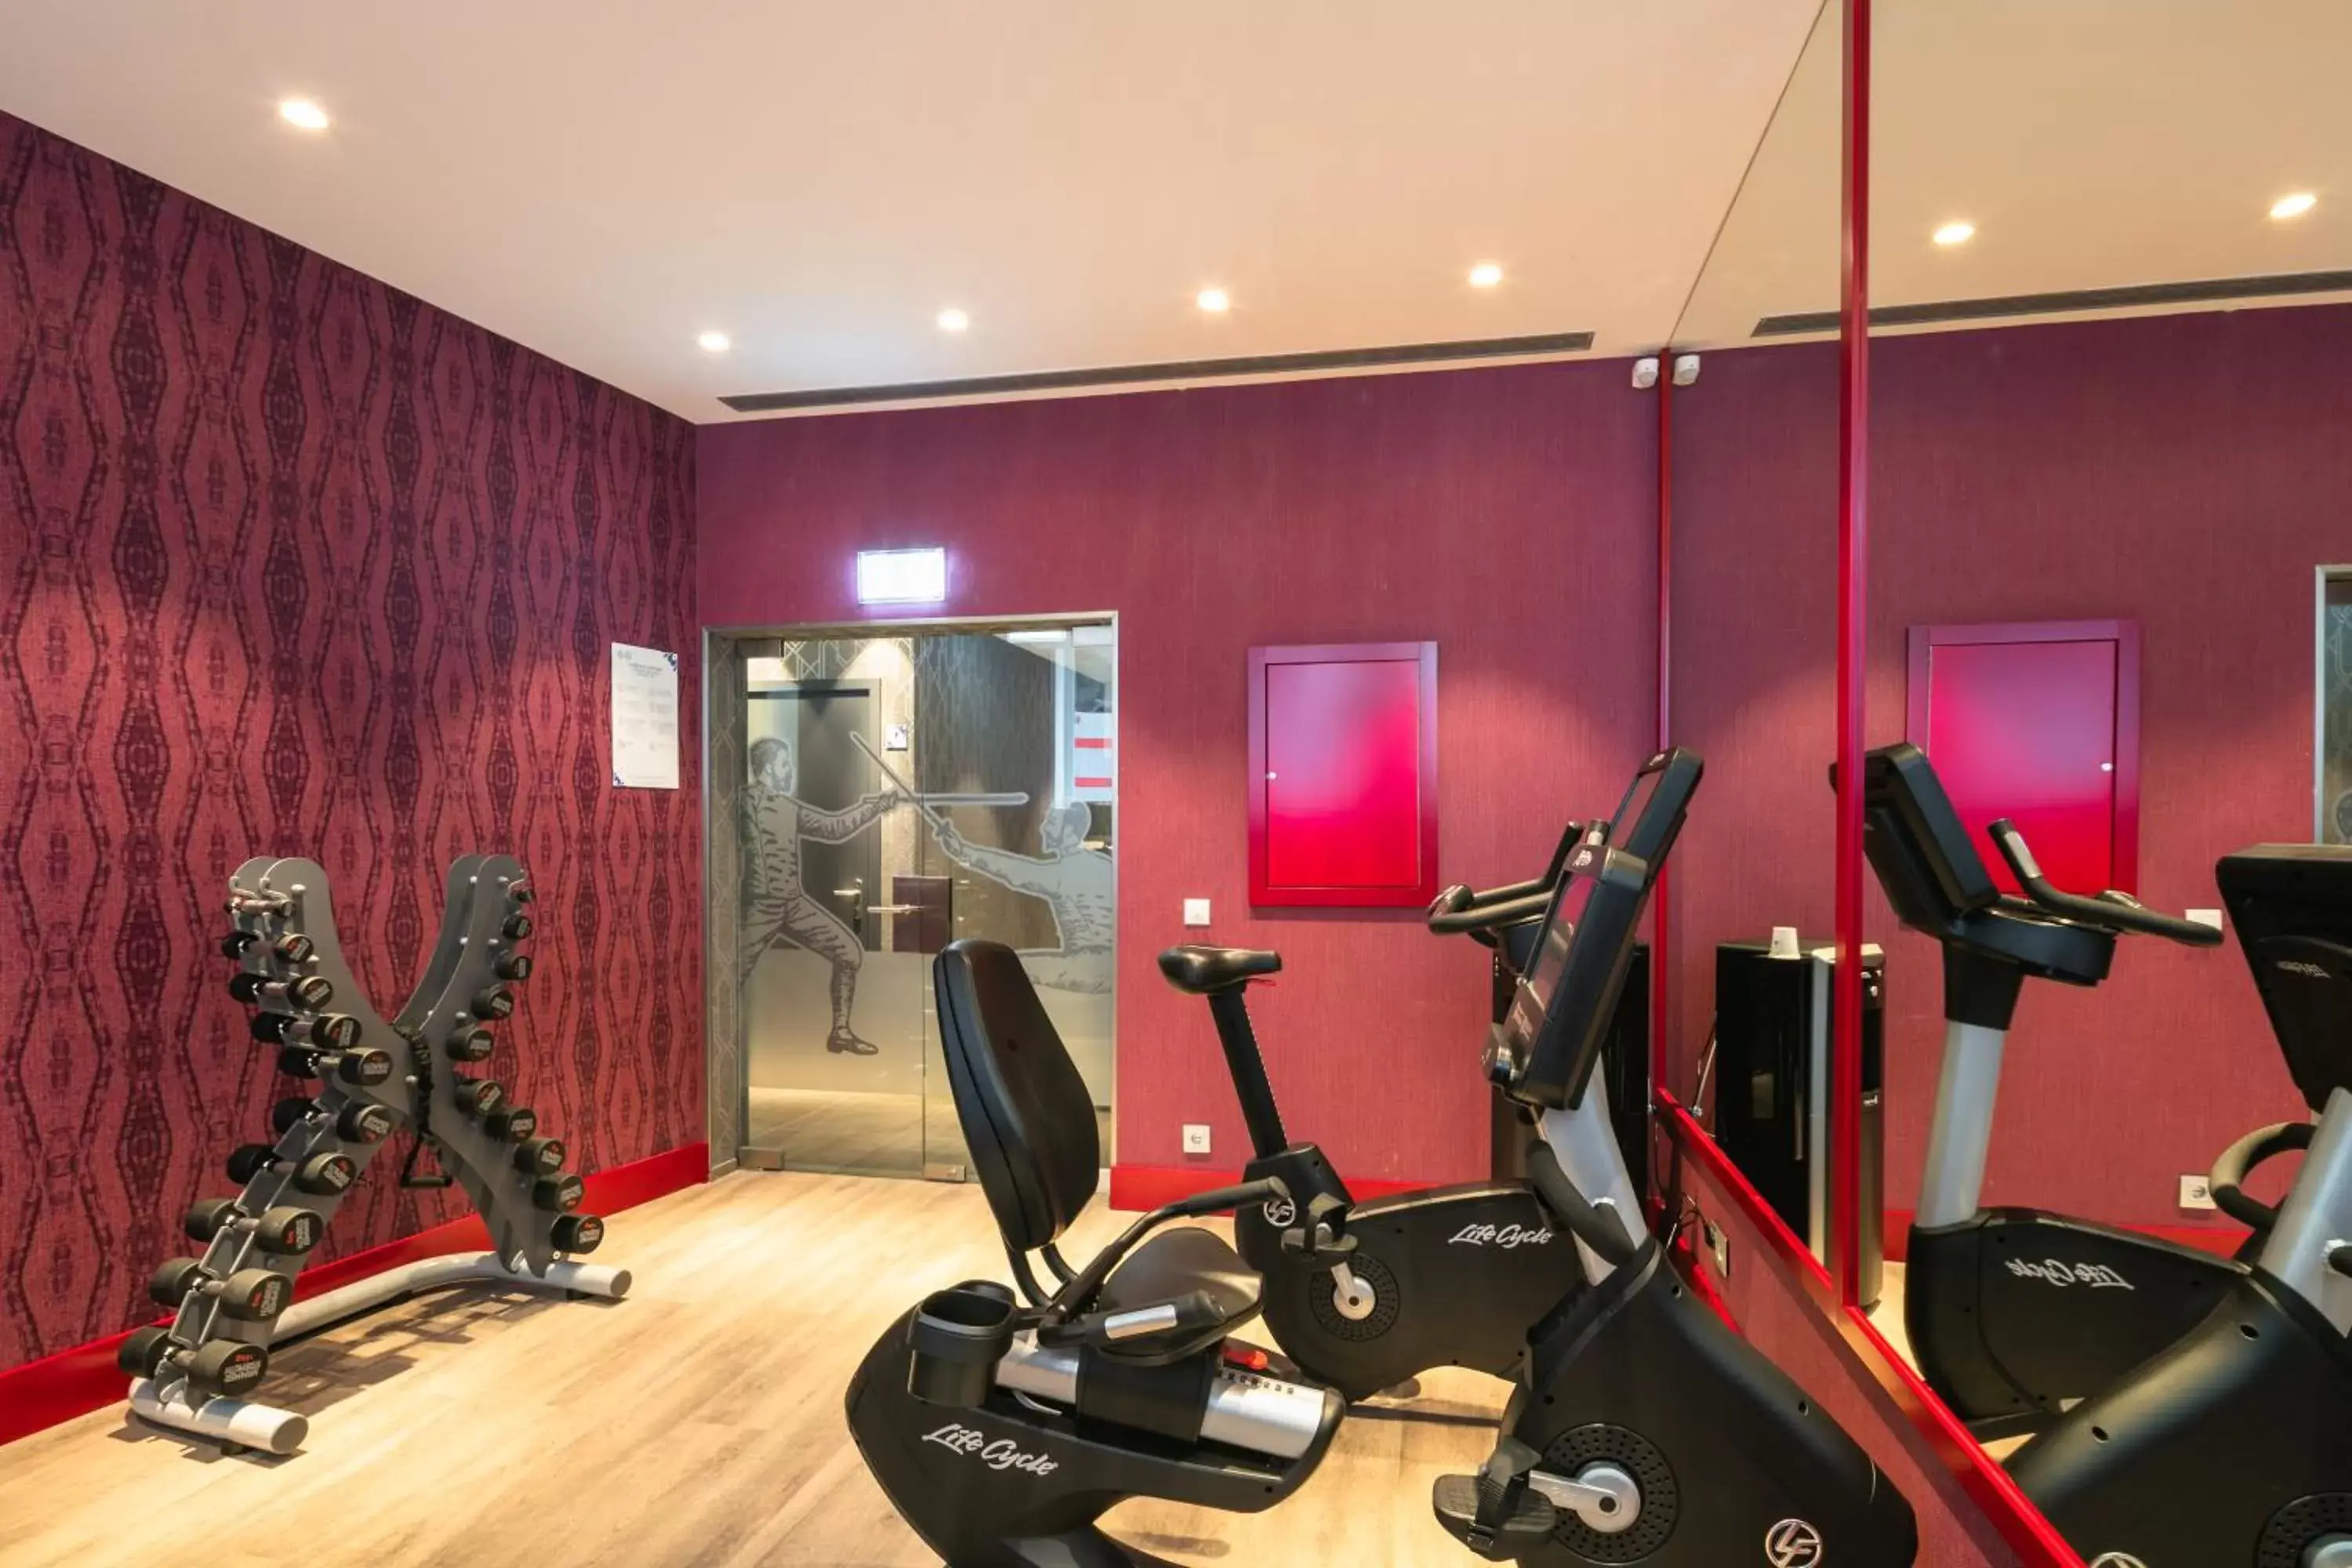 Fitness centre/facilities, Fitness Center/Facilities in Catalonia Porto